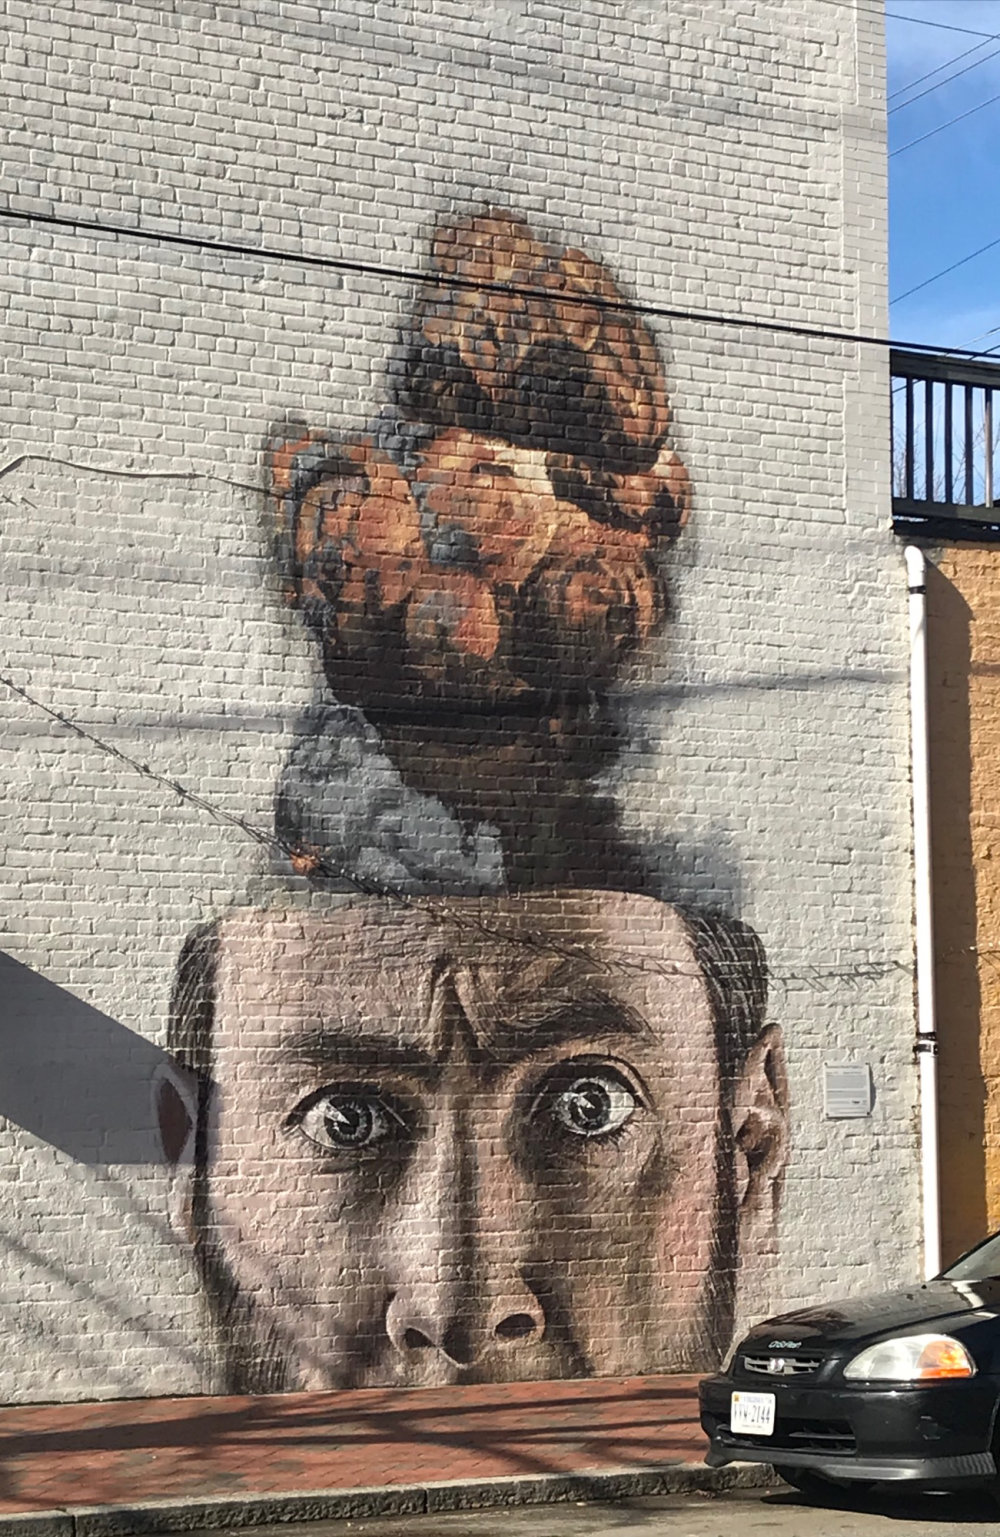 mural in Richmond by artist ONUR.